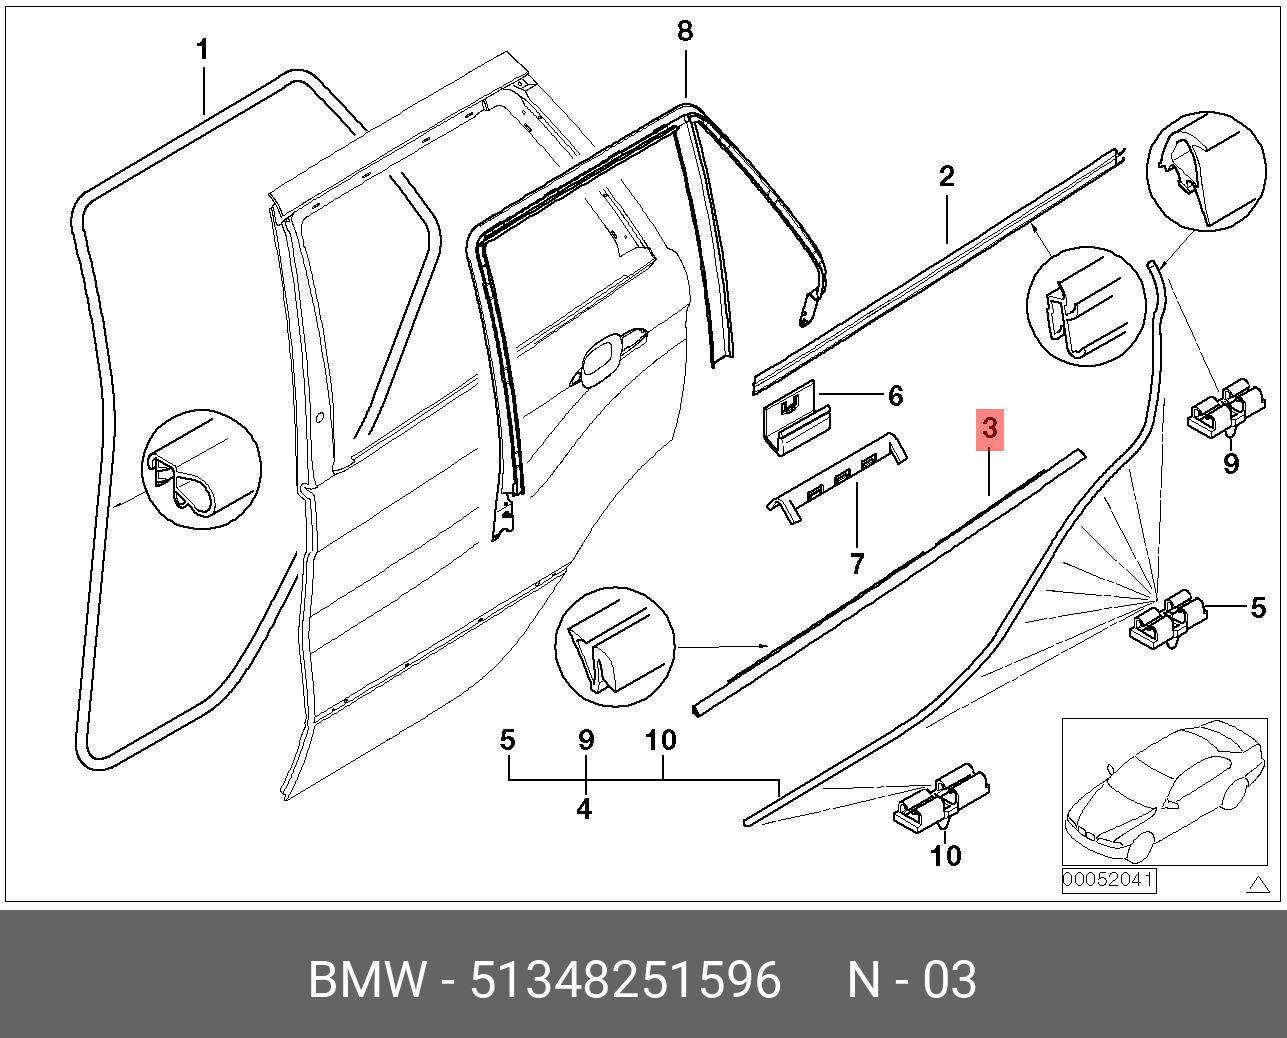 Уплотнитель стекла двери БМВ е53. Уплотнитель стекла двери БМВ х5 е53. Накладка оконной рамы двери BMW e53. Уплотнитель двери БМВ х5 е53. Задняя дверь бмв х5 е53